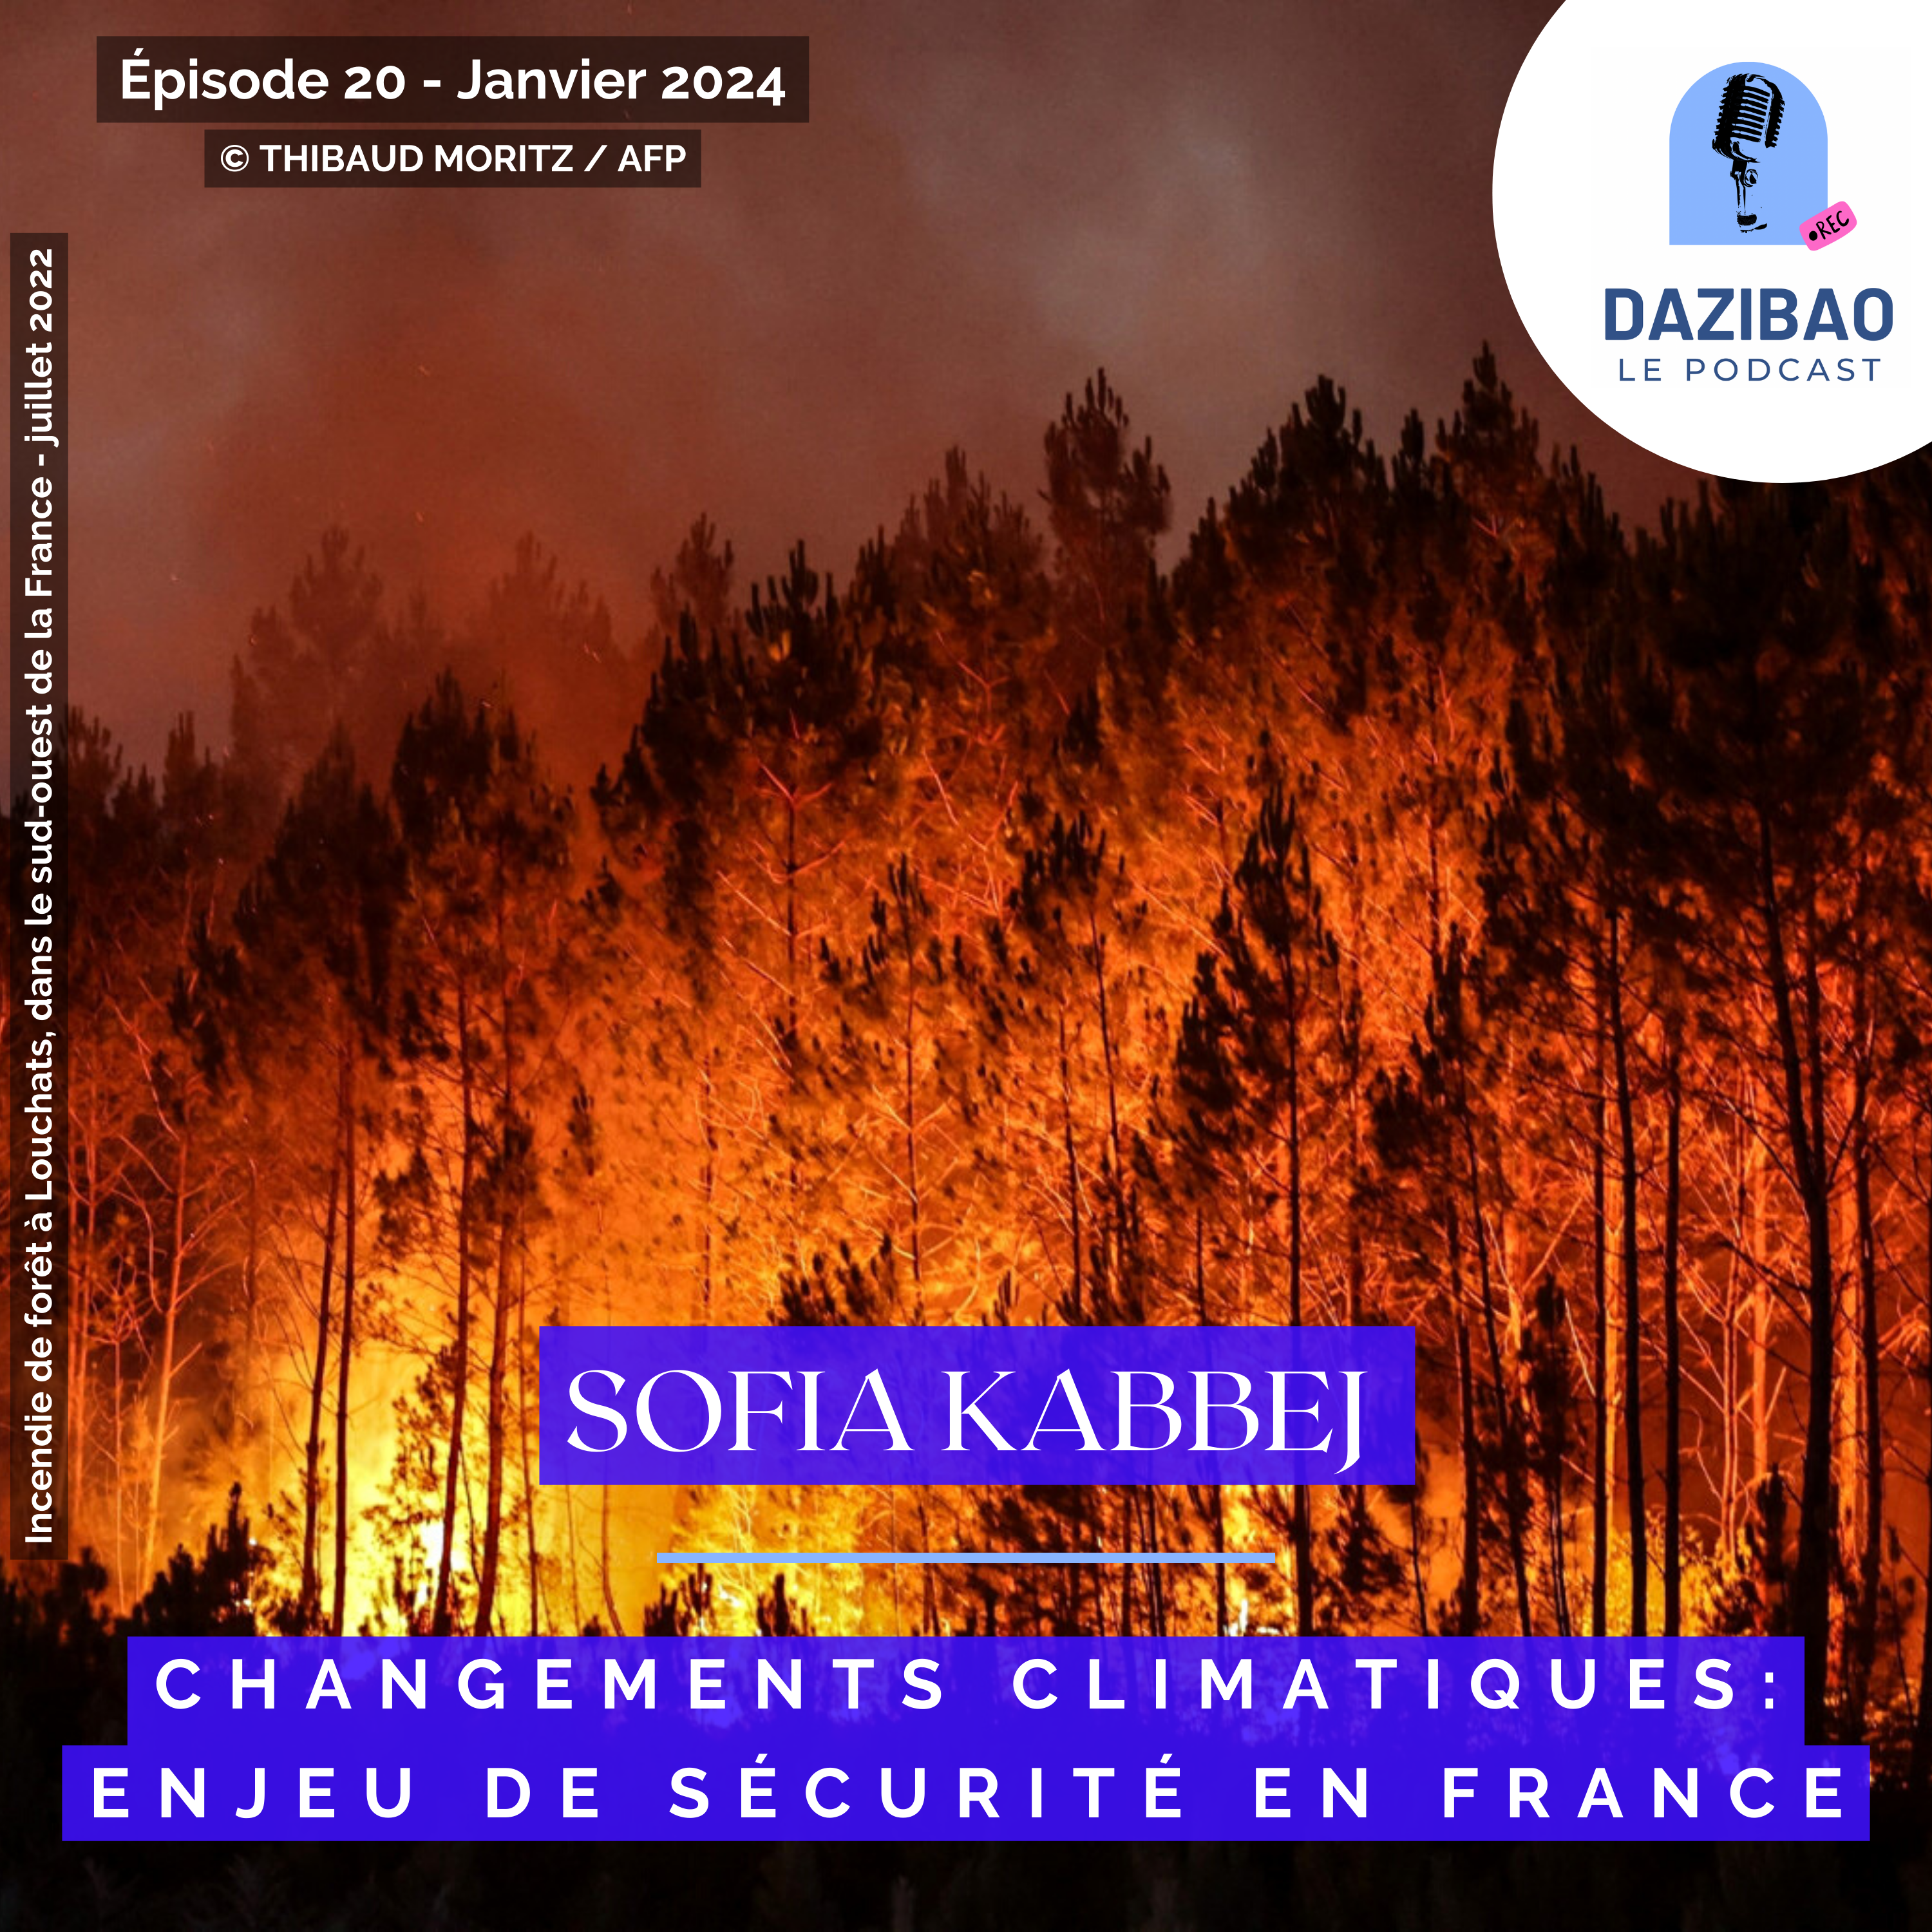 Épisode 20 : Sofia – Changements climatiques : enjeu de sécurité en France.